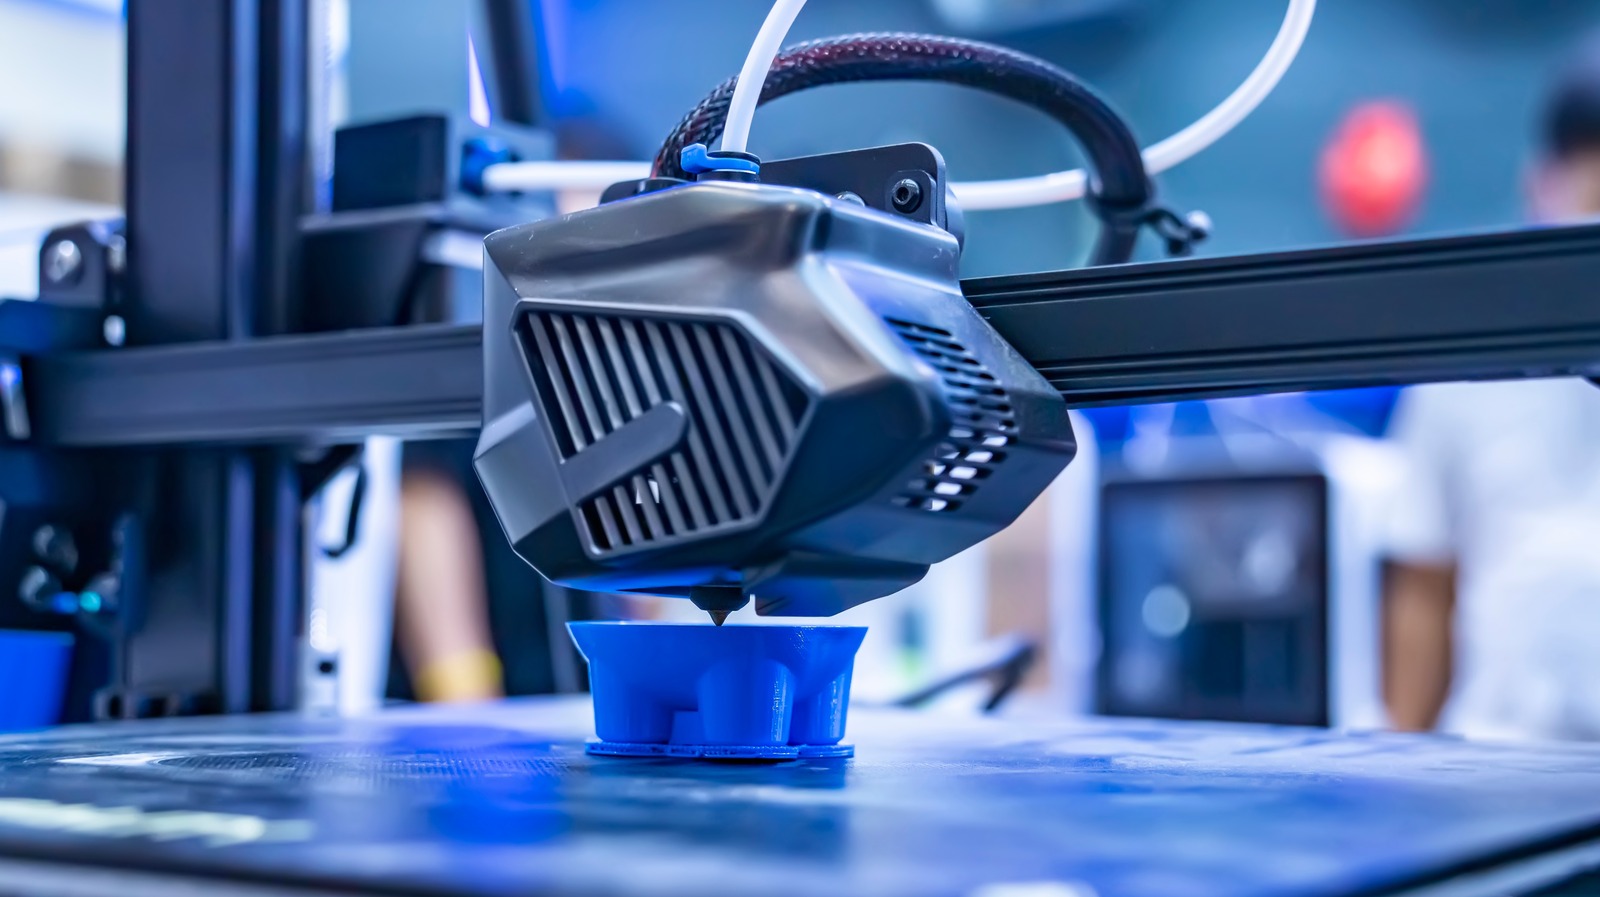 6 accesorios para herramientas eléctricas que puedes imprimir en 3D en casa